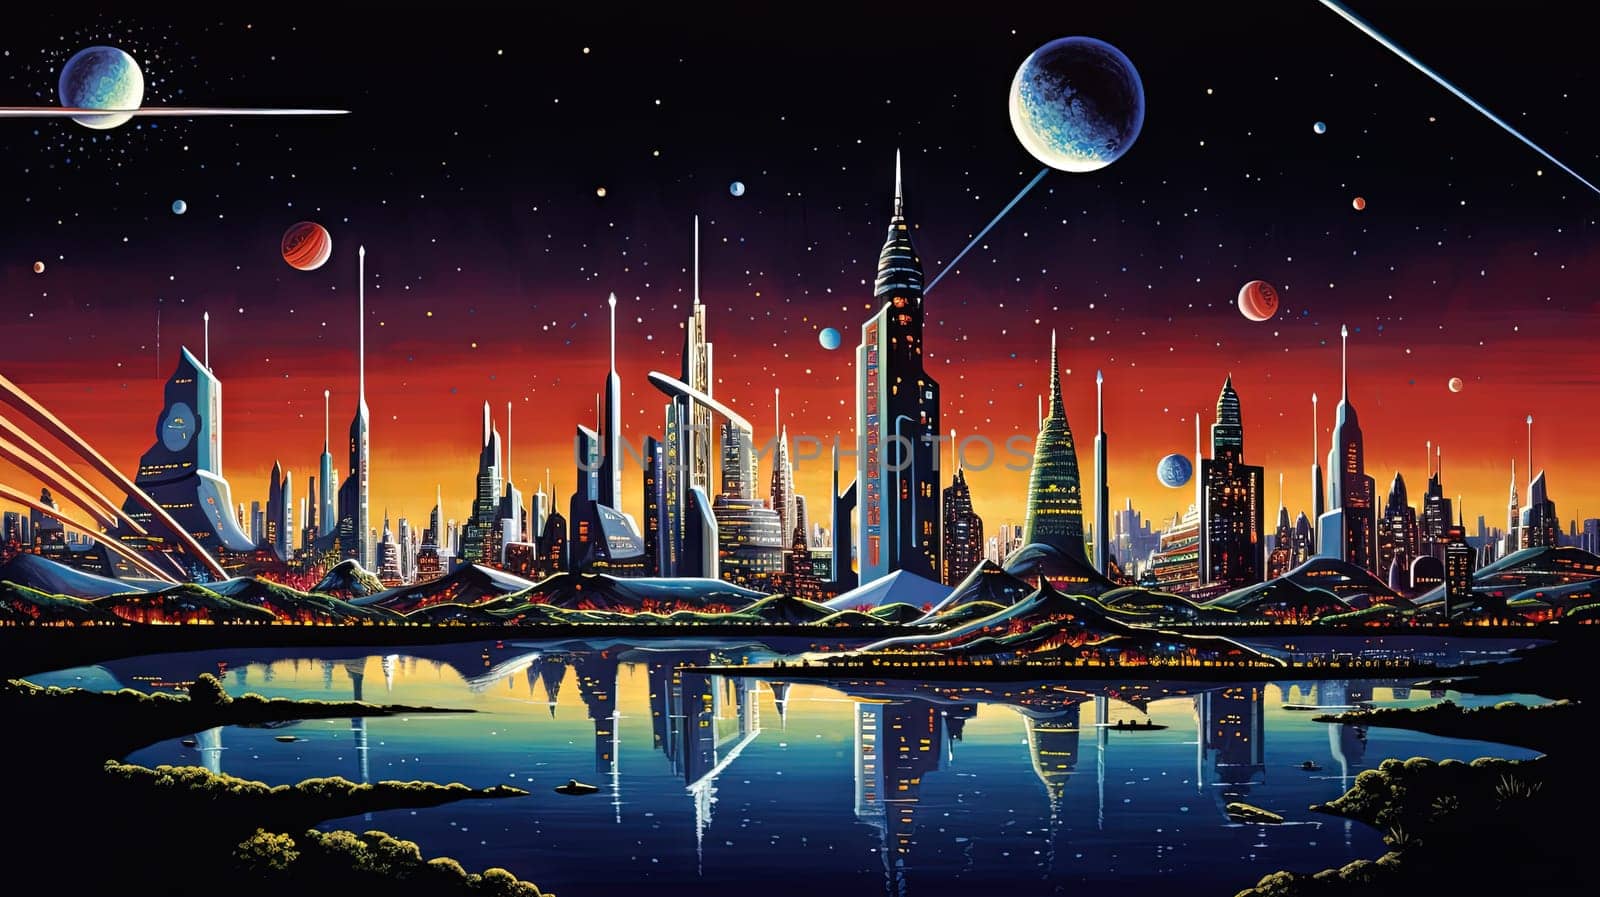 Retro futuristic city in the old school sci-fi art scene. Retro space landscape with city. Generated AI. by SwillKch